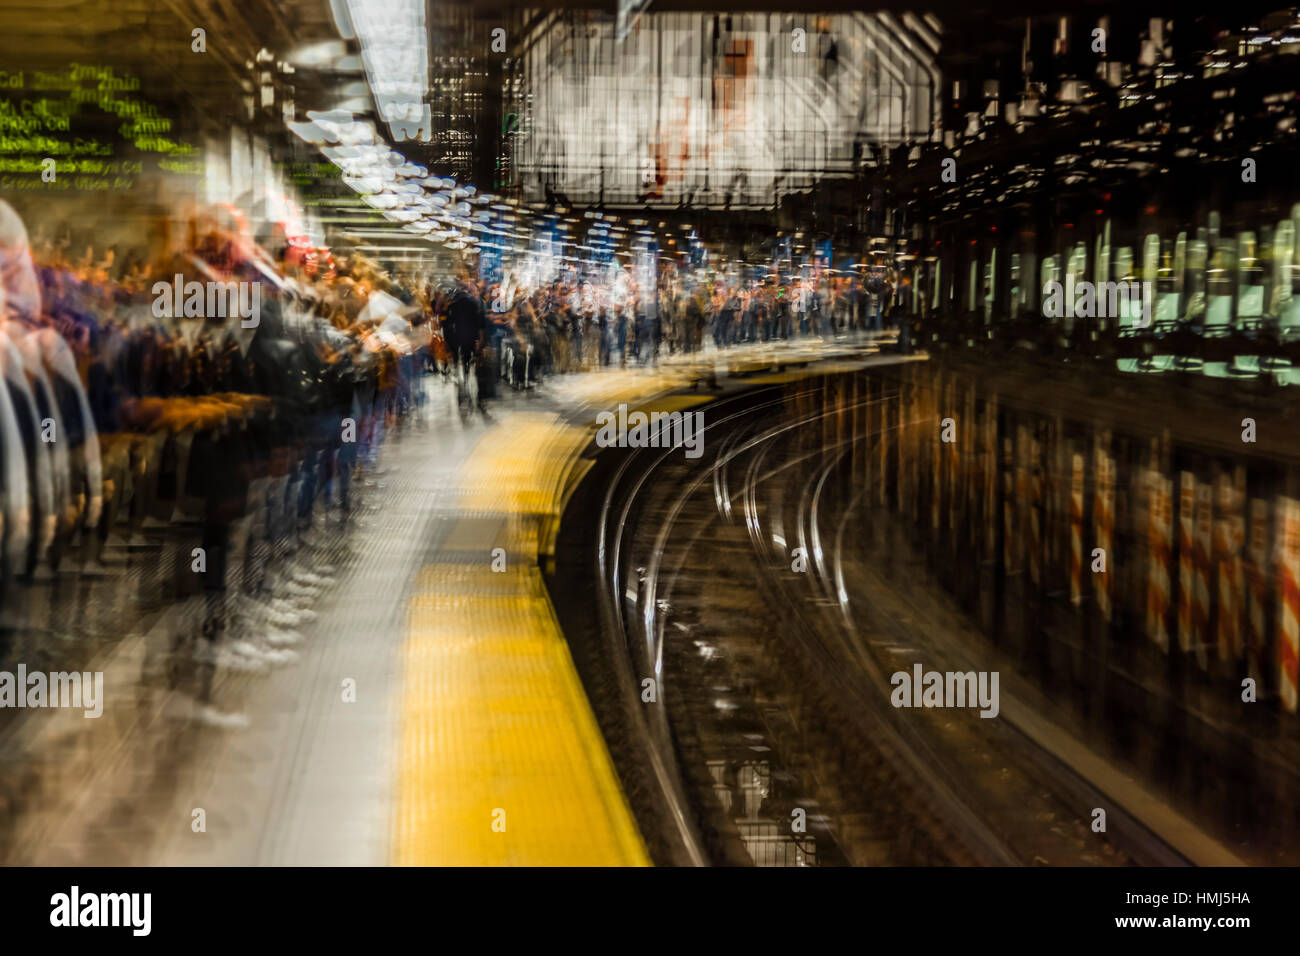 24. Oktober 2016 - verschwommen impressionistischen Blick auf u-Bahn-Fahrer in NYC u-Bahn Zug, Zug - Spezialeffekt warten Stockfoto